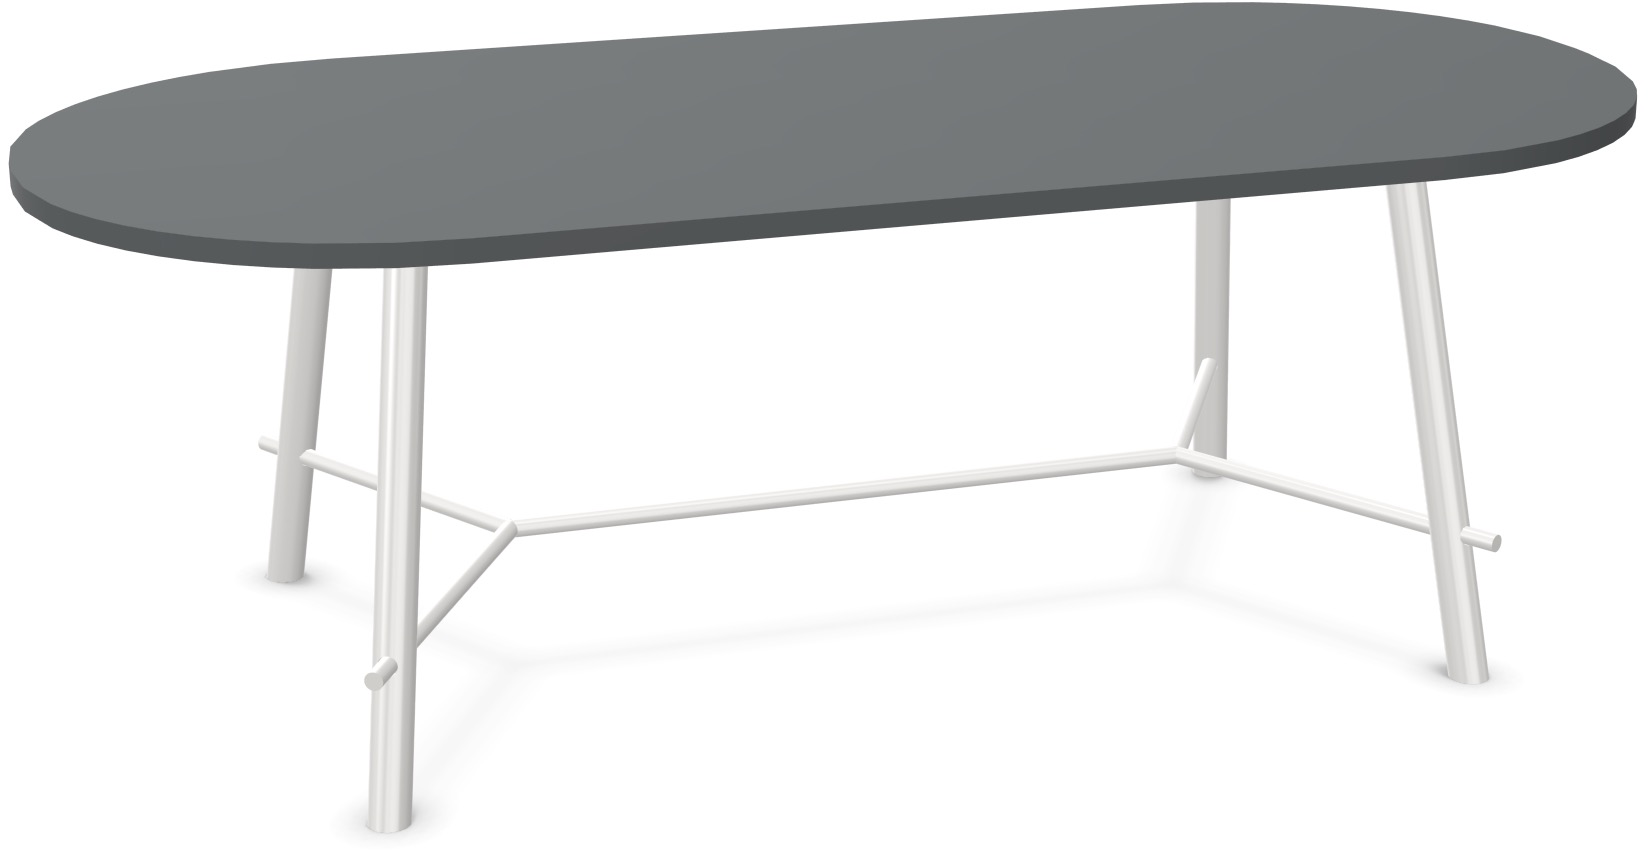 Record Living Tisch in Anthrazit / Weiss präsentiert im Onlineshop von KAQTU Design AG. Esstisch ist von Infiniti Design